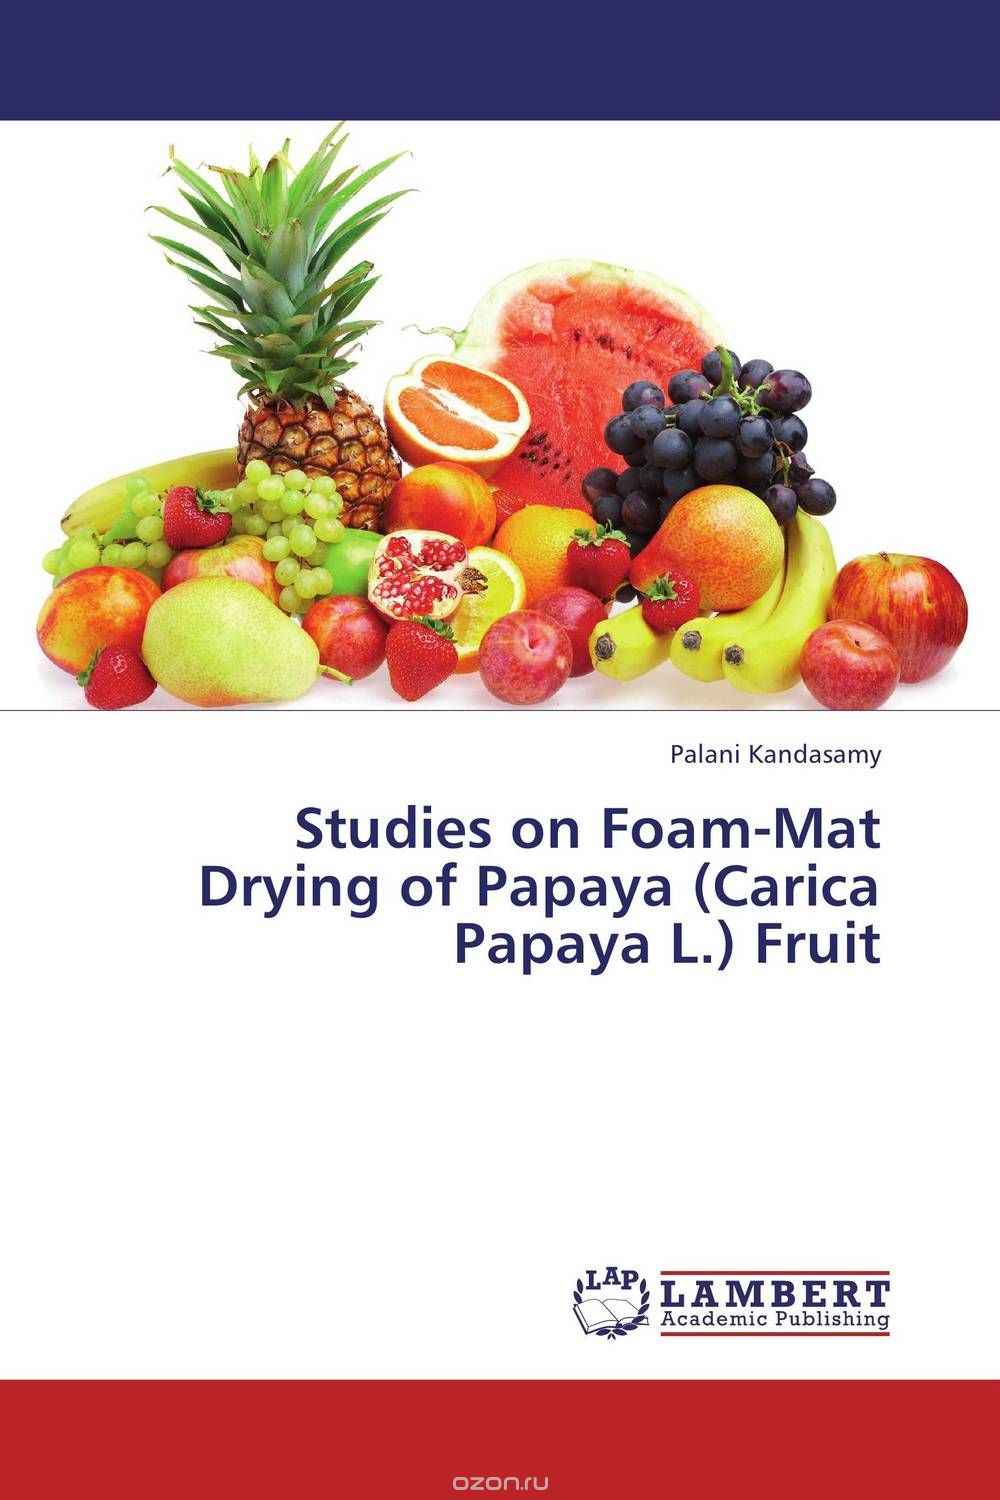 Скачать книгу "Studies on Foam-Mat Drying of Papaya (Carica Papaya L.) Fruit"